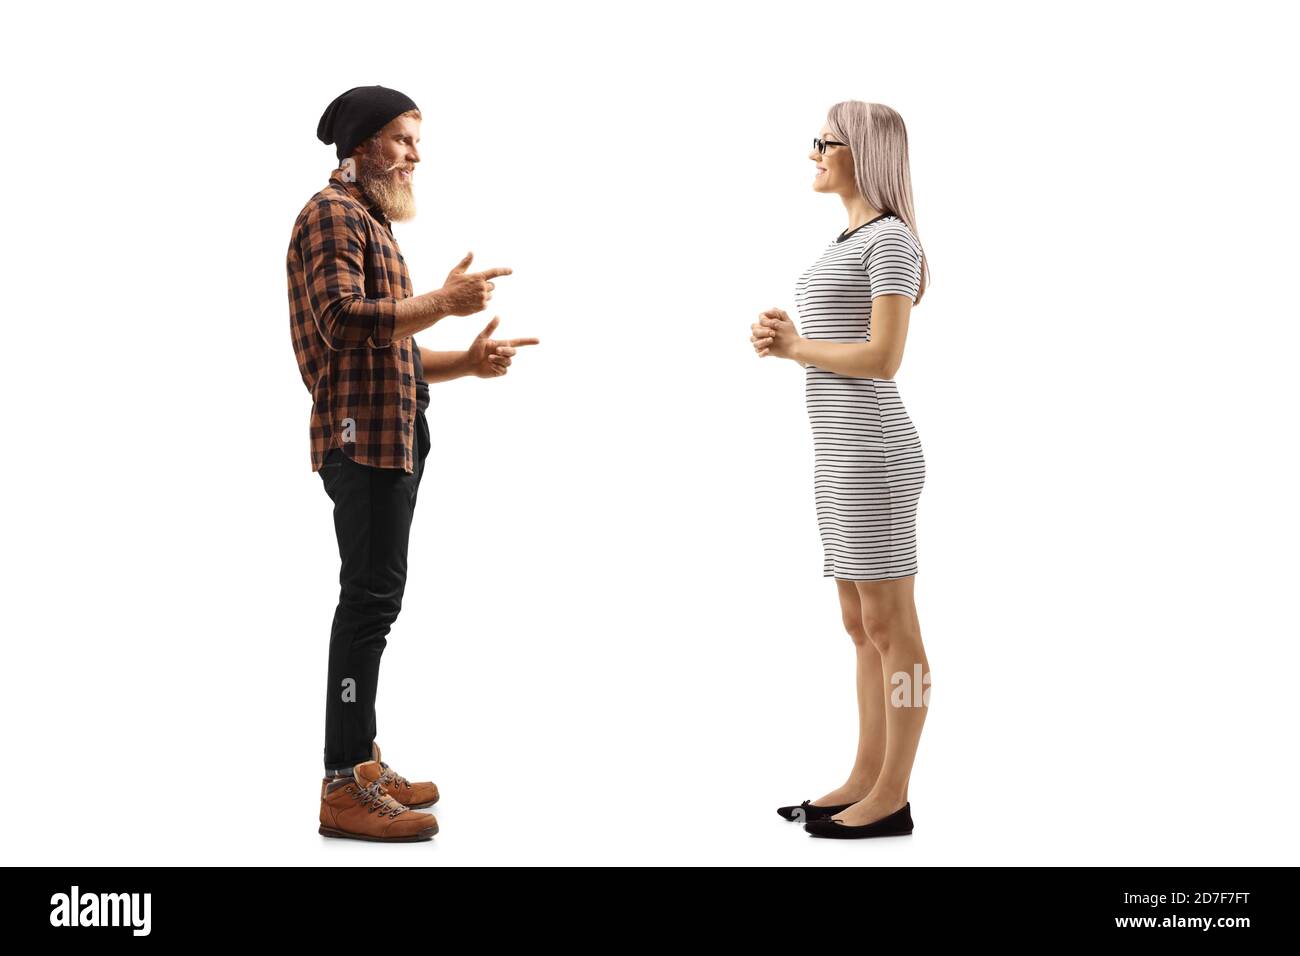 Ganzkörperaufnahme eines bärtigen jungen Mannes im Stehen Und im Gespräch mit einer jungen blonden Frau isoliert auf weiß Hintergrund Stockfoto